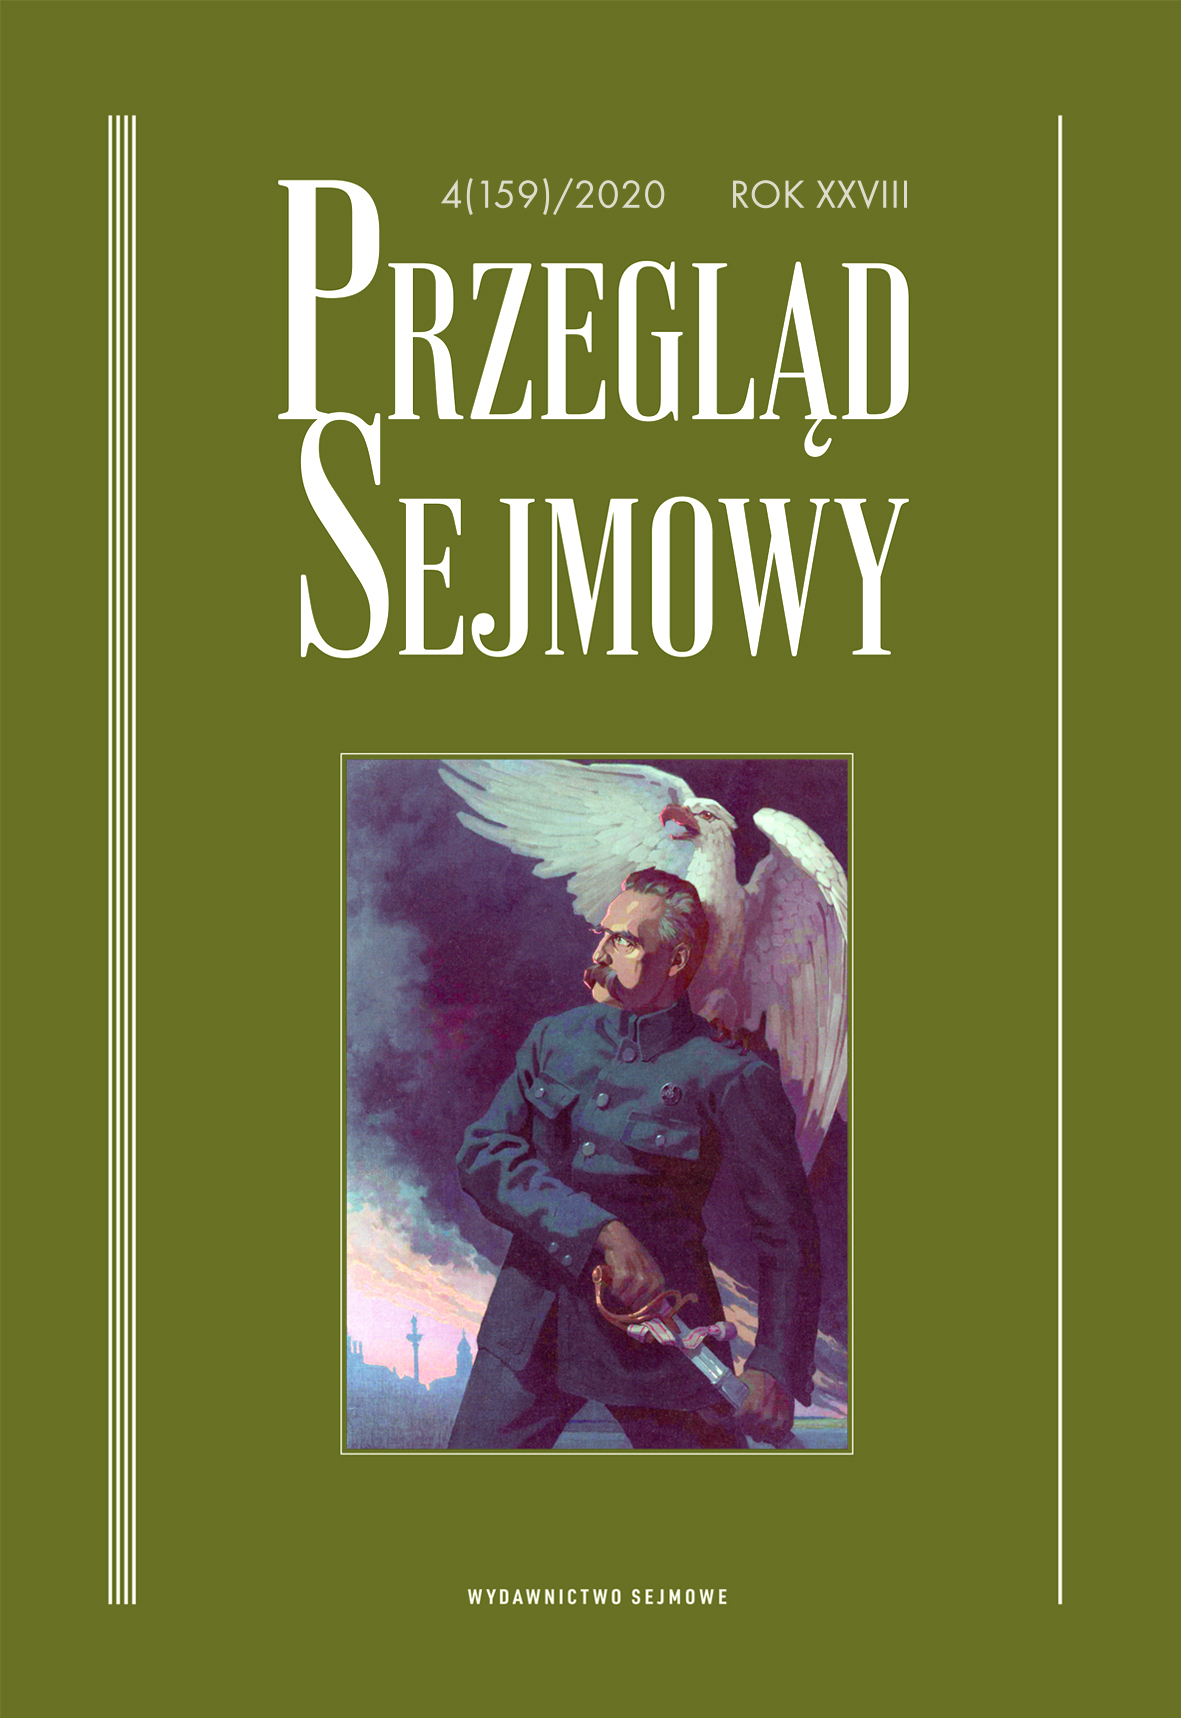 Ryszard M. Małajny
Parlamentaryzm europejski
Wydawnictwo Sejmowe, Warszawa 2019, s. 780